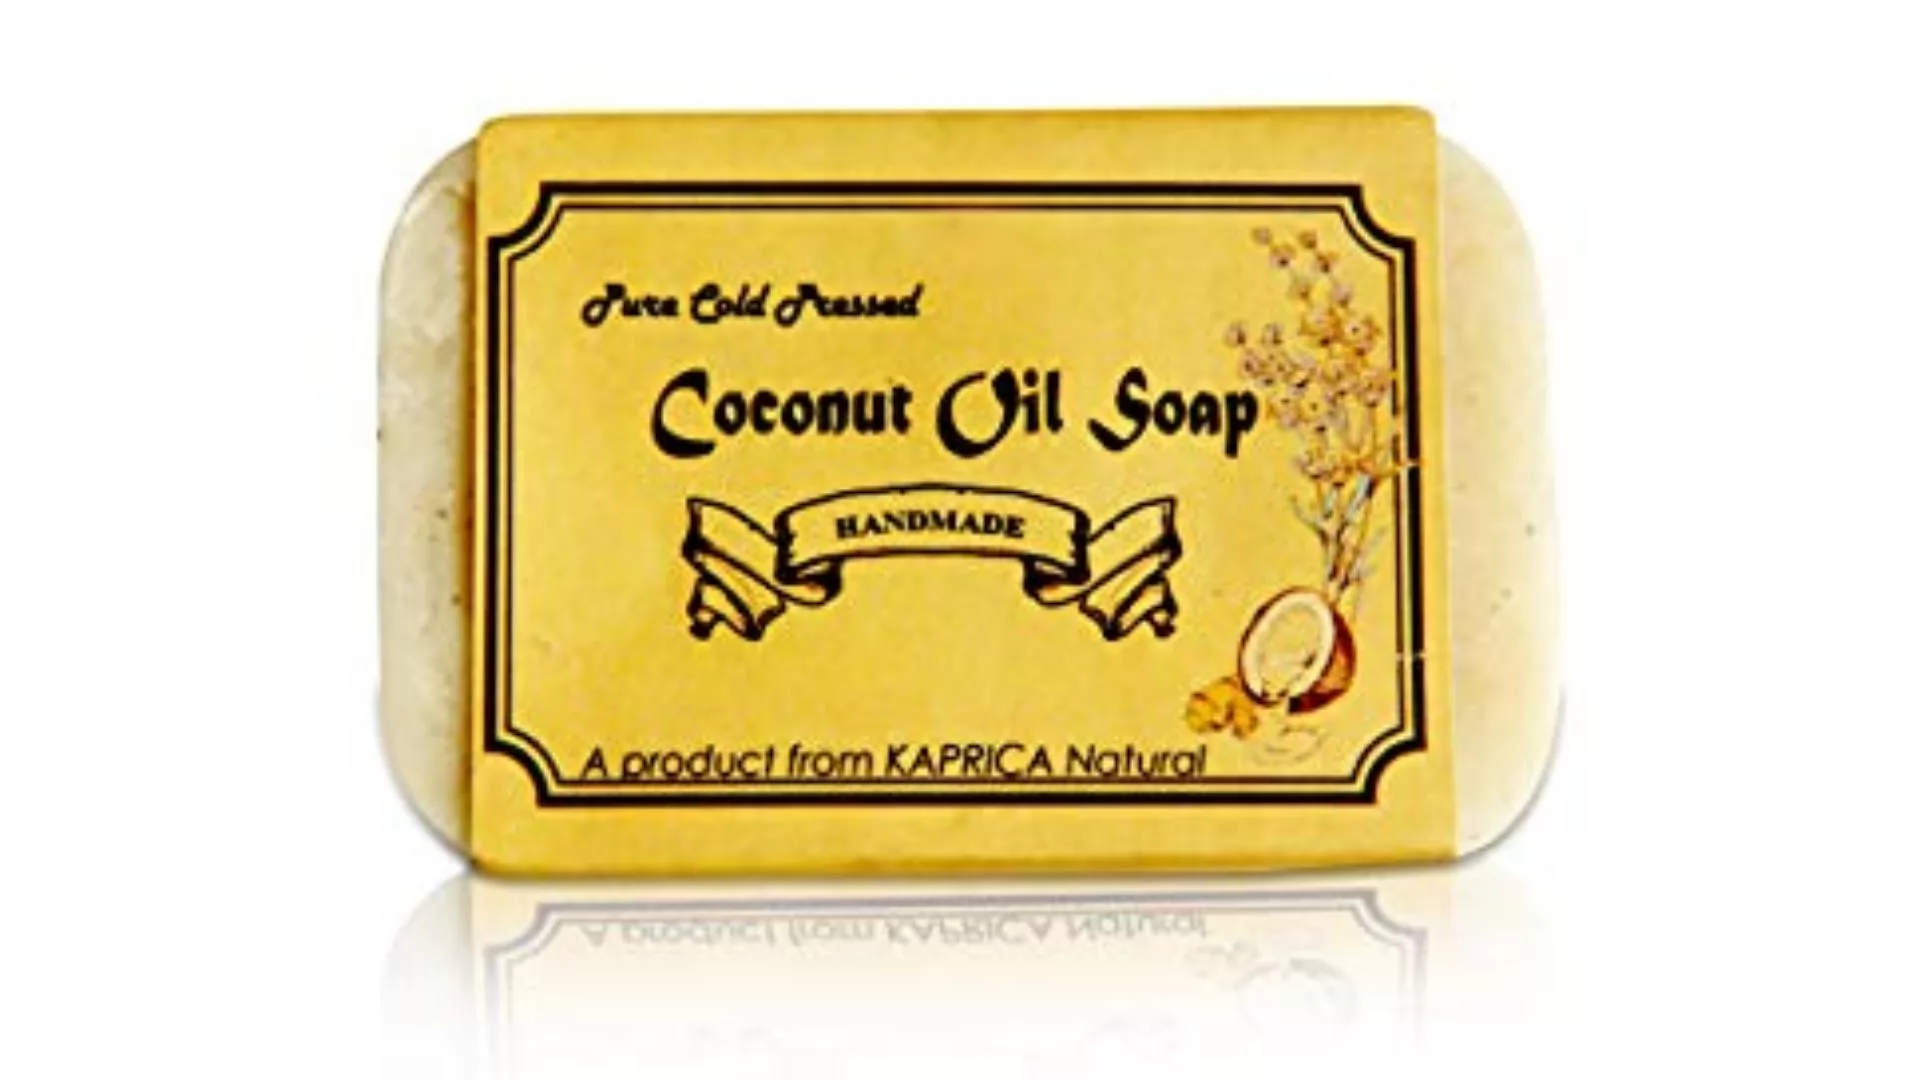 Kaprica natural coconut oil soap